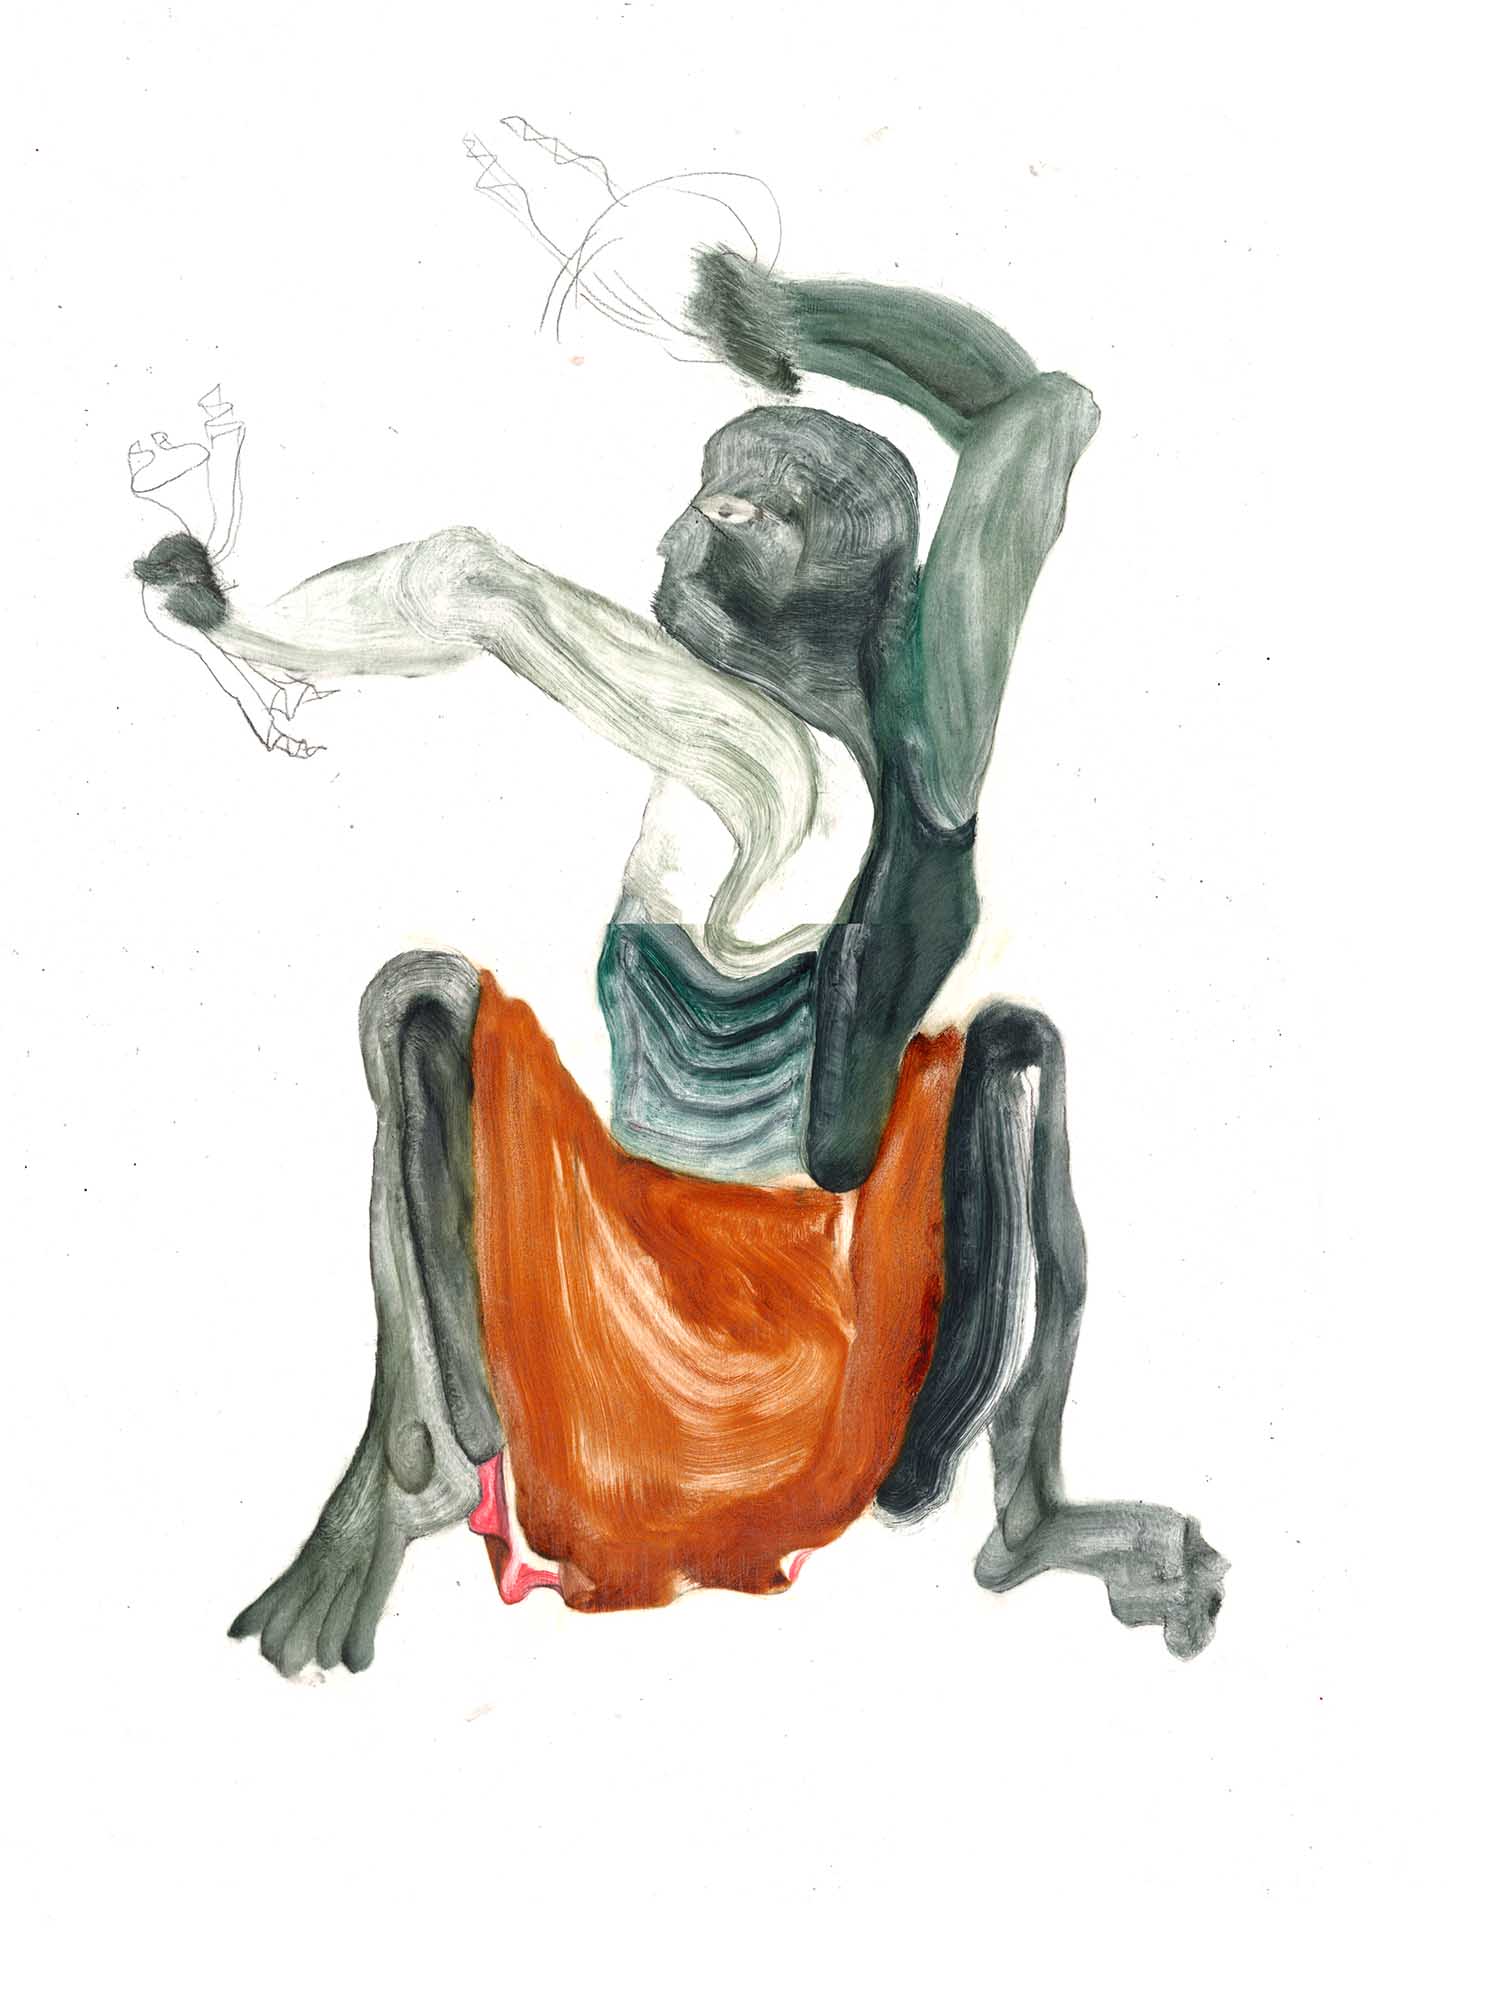 L’Amoureux danseur de Siyah
huile sur papier cuisson
53 x 32 cm